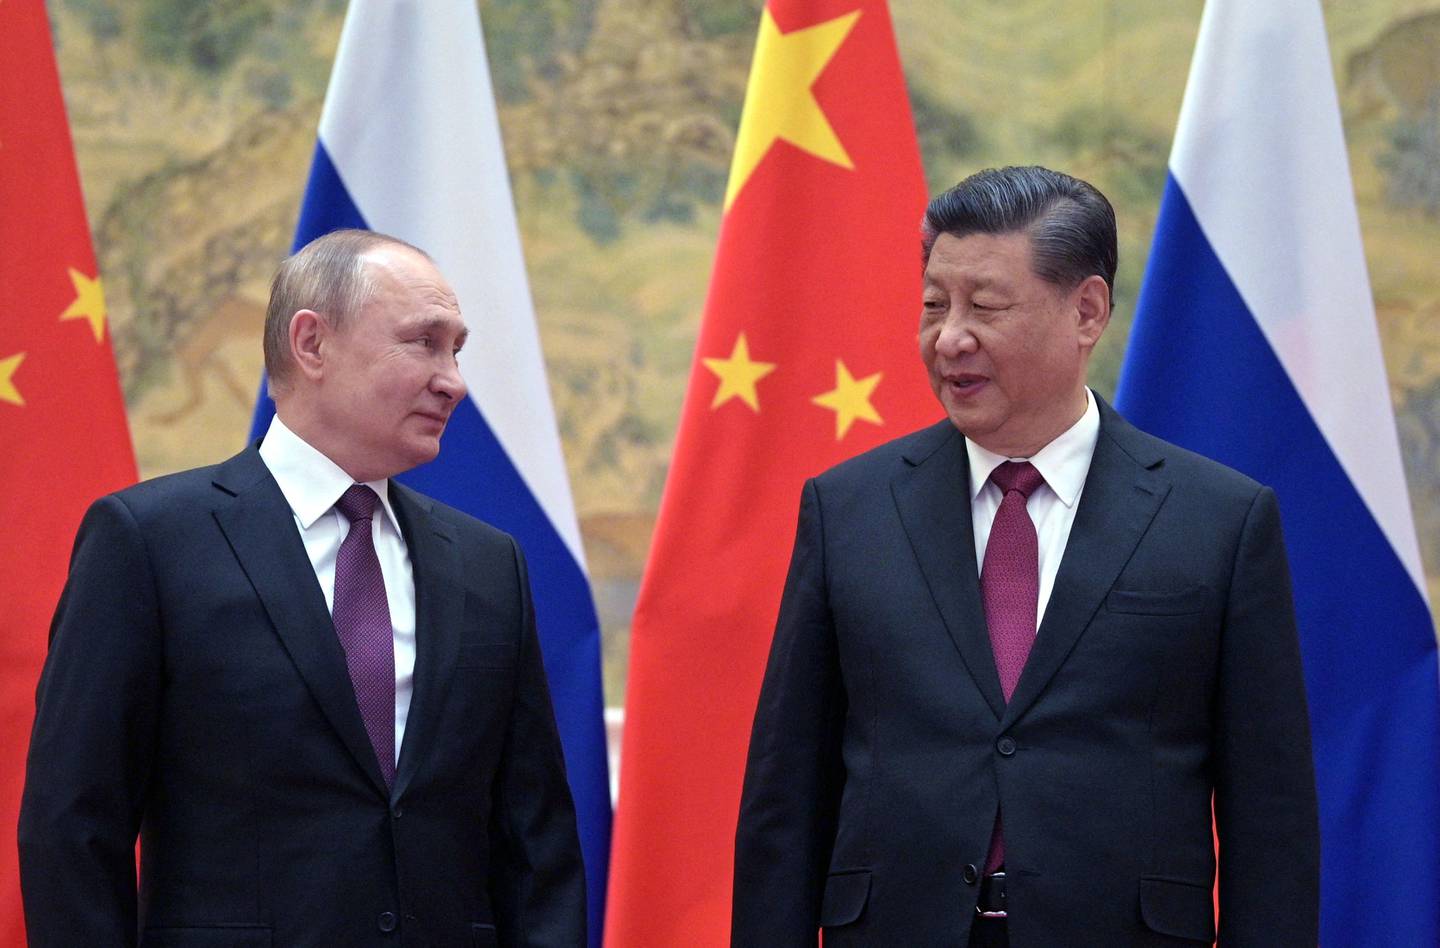 El presidente ruso Vladimir Putin (izq.) y el presidente chino Xi Jinping posan para una fotografía durante su reunión en Pekín, el 4 de febrero de 2022. Fotógrafo: Alexei Druzhinin